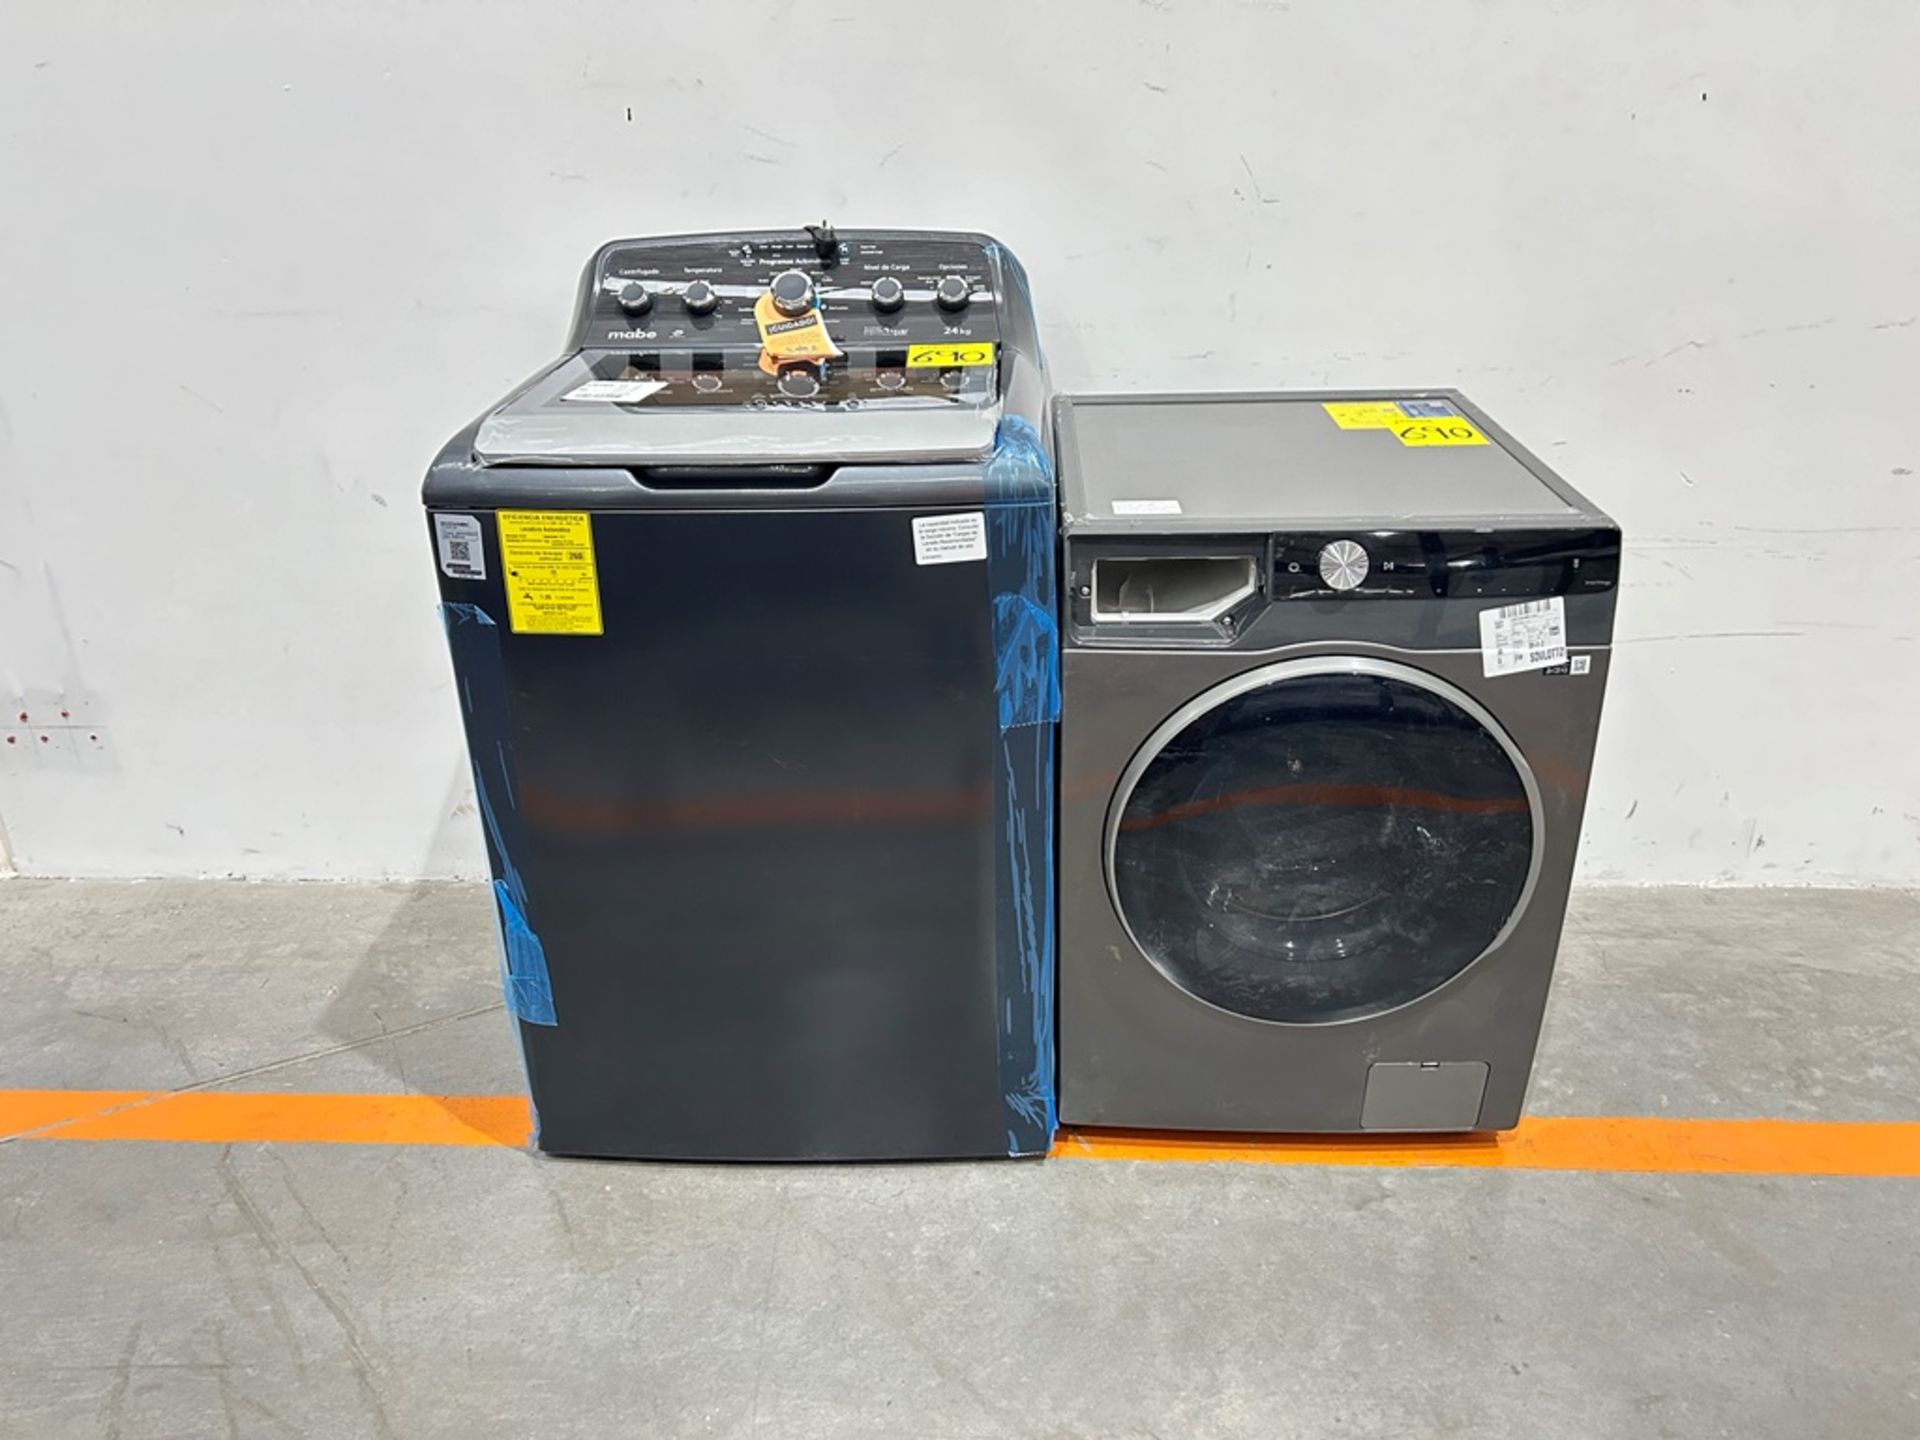 Lote de 2 lavadoras contiene: 1 Lavadora de 24 KG Marca MABE, Modelo LMA742115WDAB10, Serie S15124,